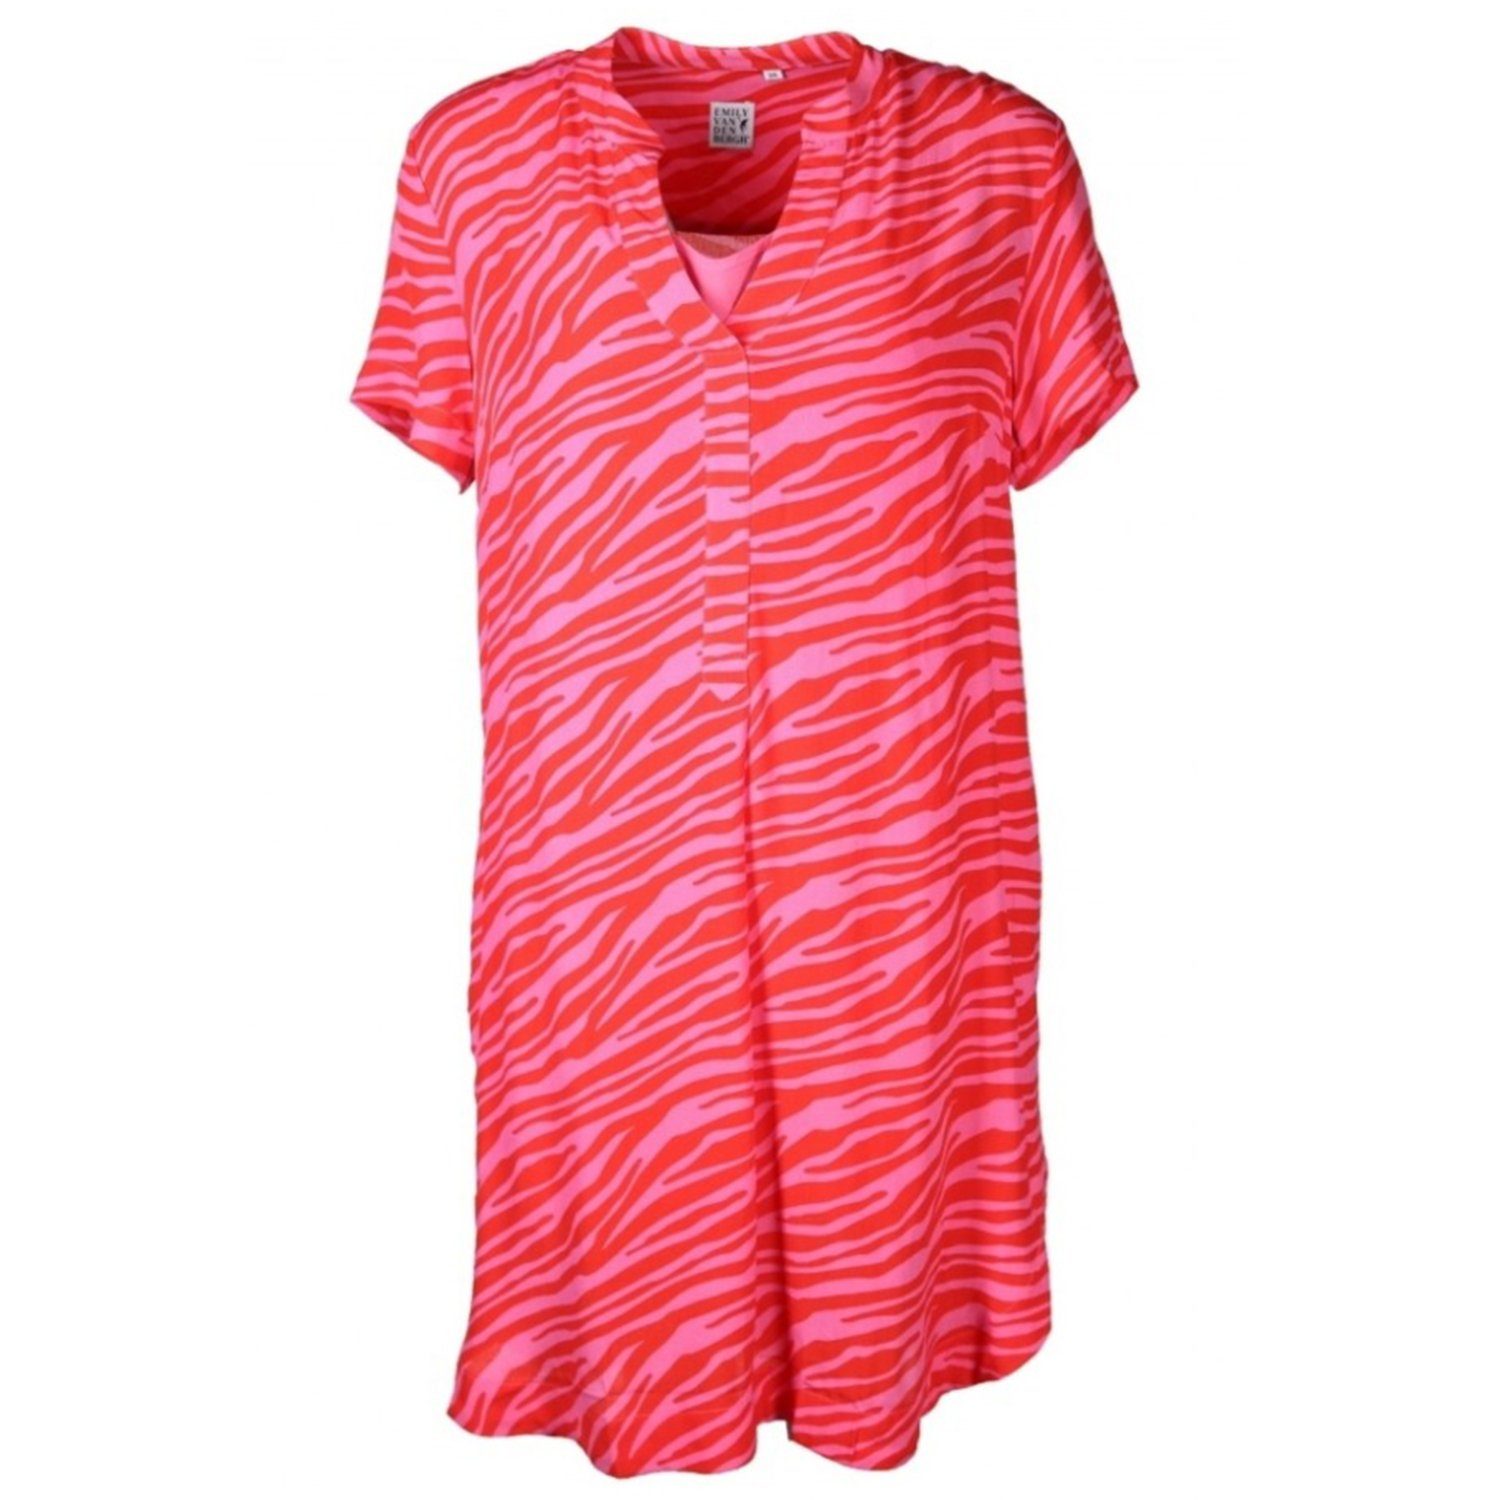 Damen Kleider Emily Van Den Bergh Tunikakleid red/pink Zebra Print